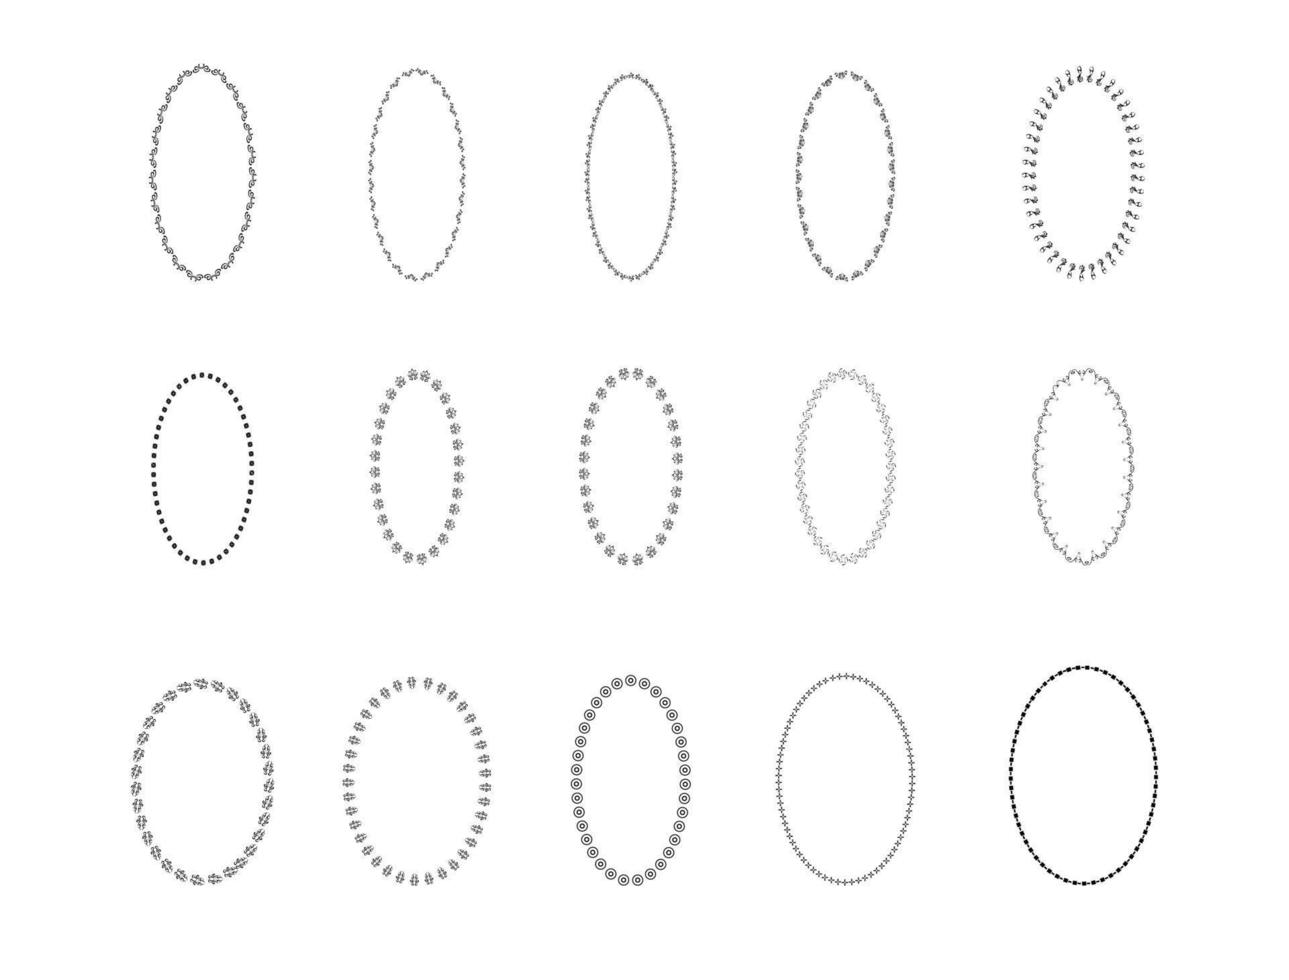 samling av oval gräns illustrationer vektor